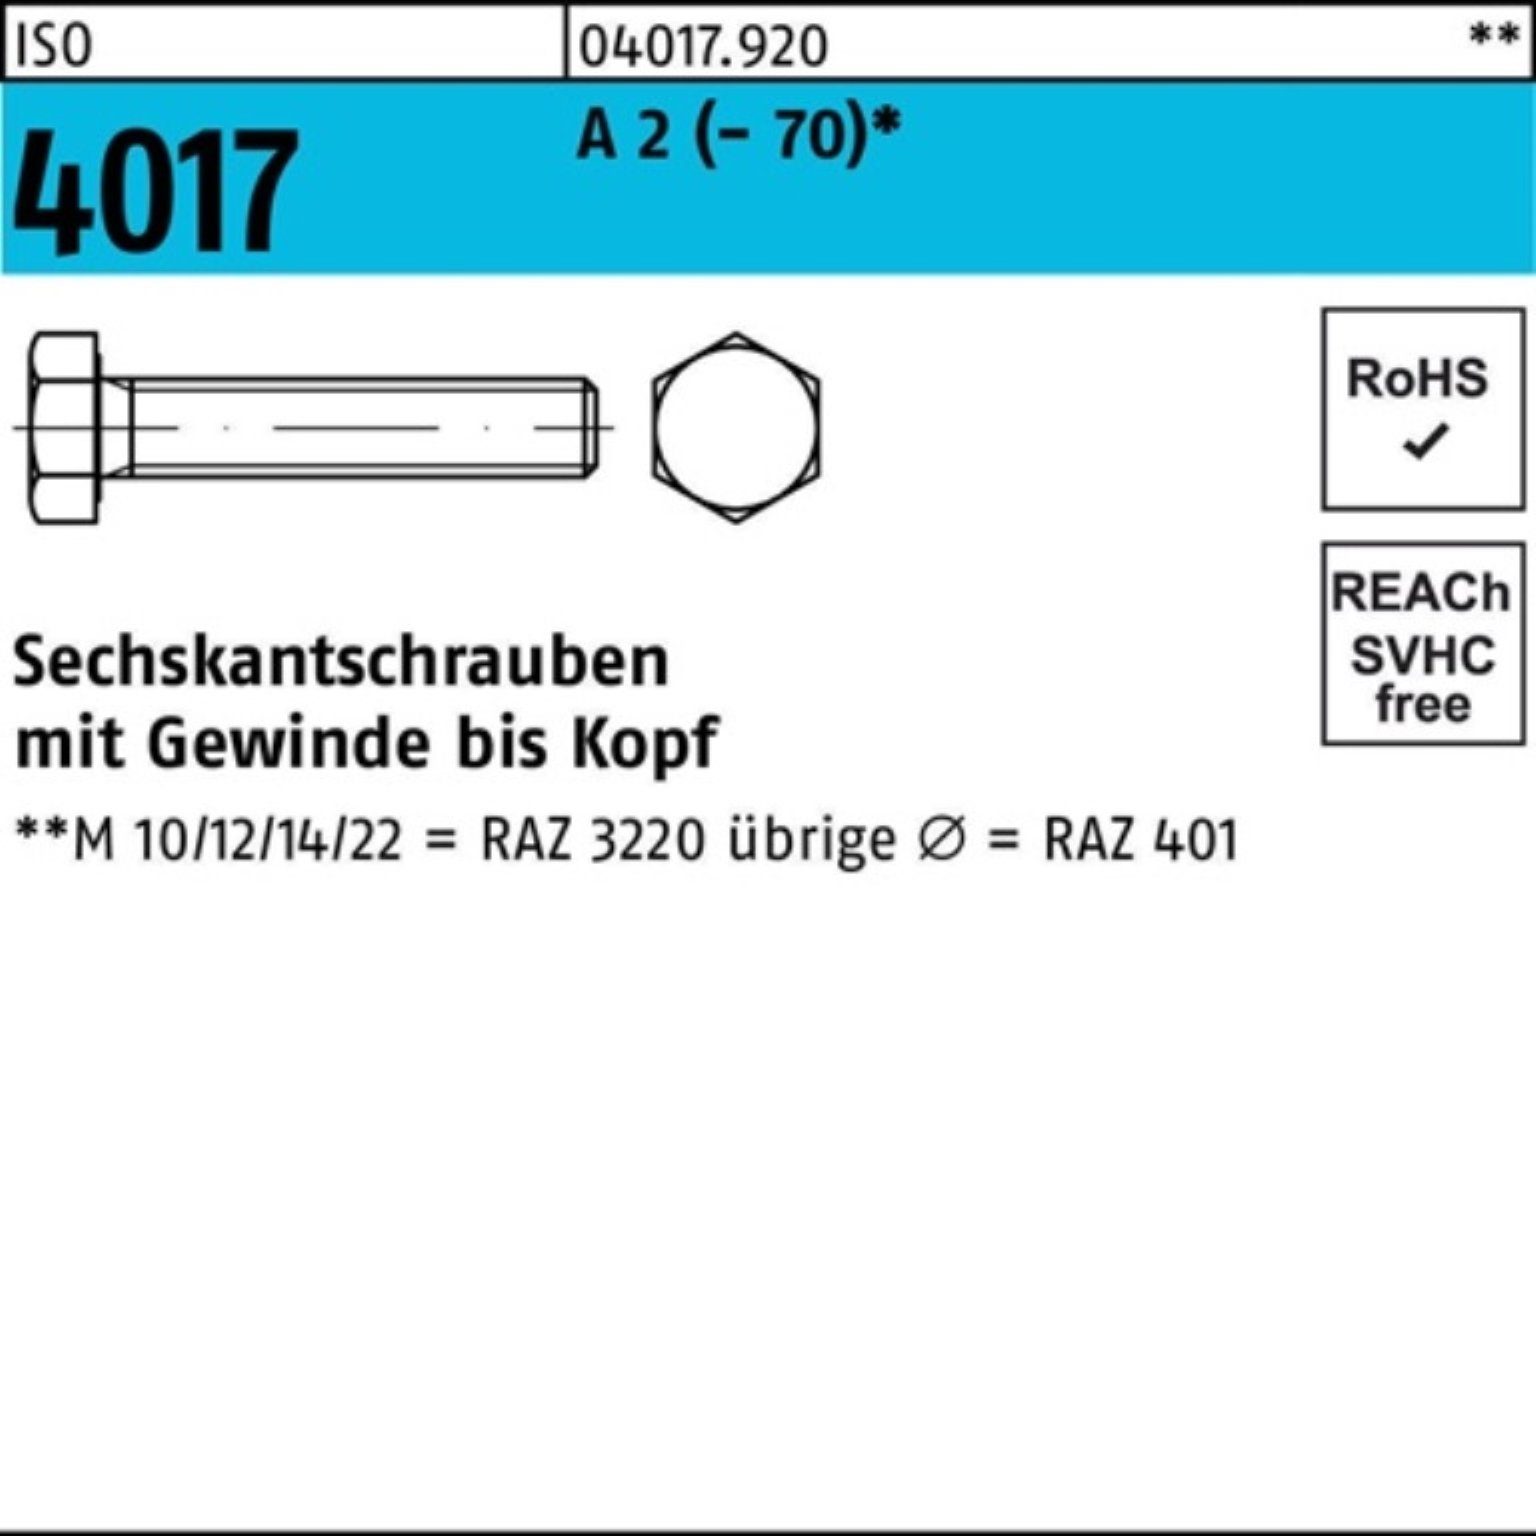 Bufab Sechskantschraube 200er Pack Sechskantschraube ISO 4017 VG M5x 50 A 2 (70) 200 Stück | Schrauben